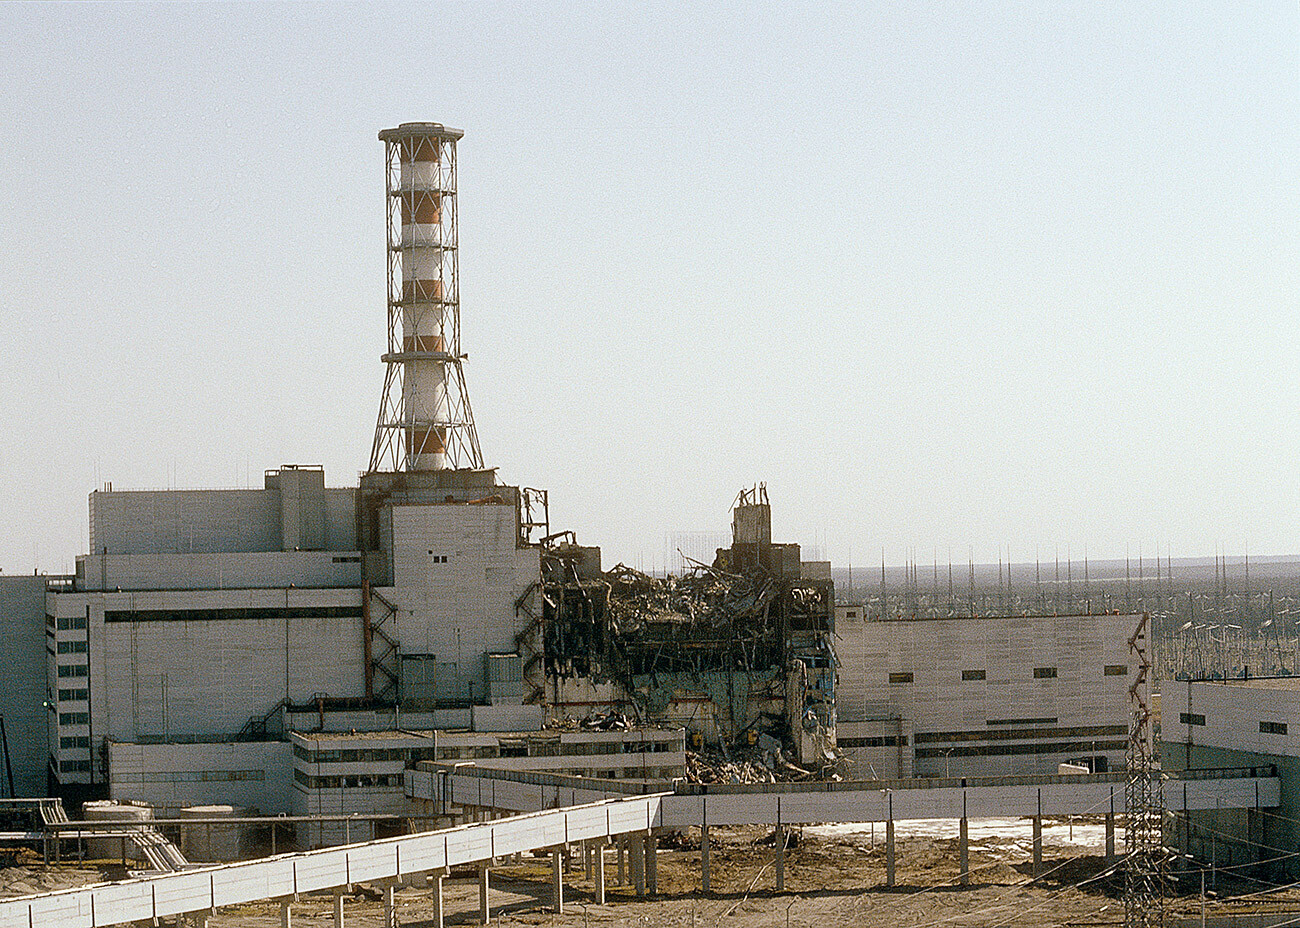 La centrale di Chernobyl vista dal quarto reattore, 26 aprile 1986